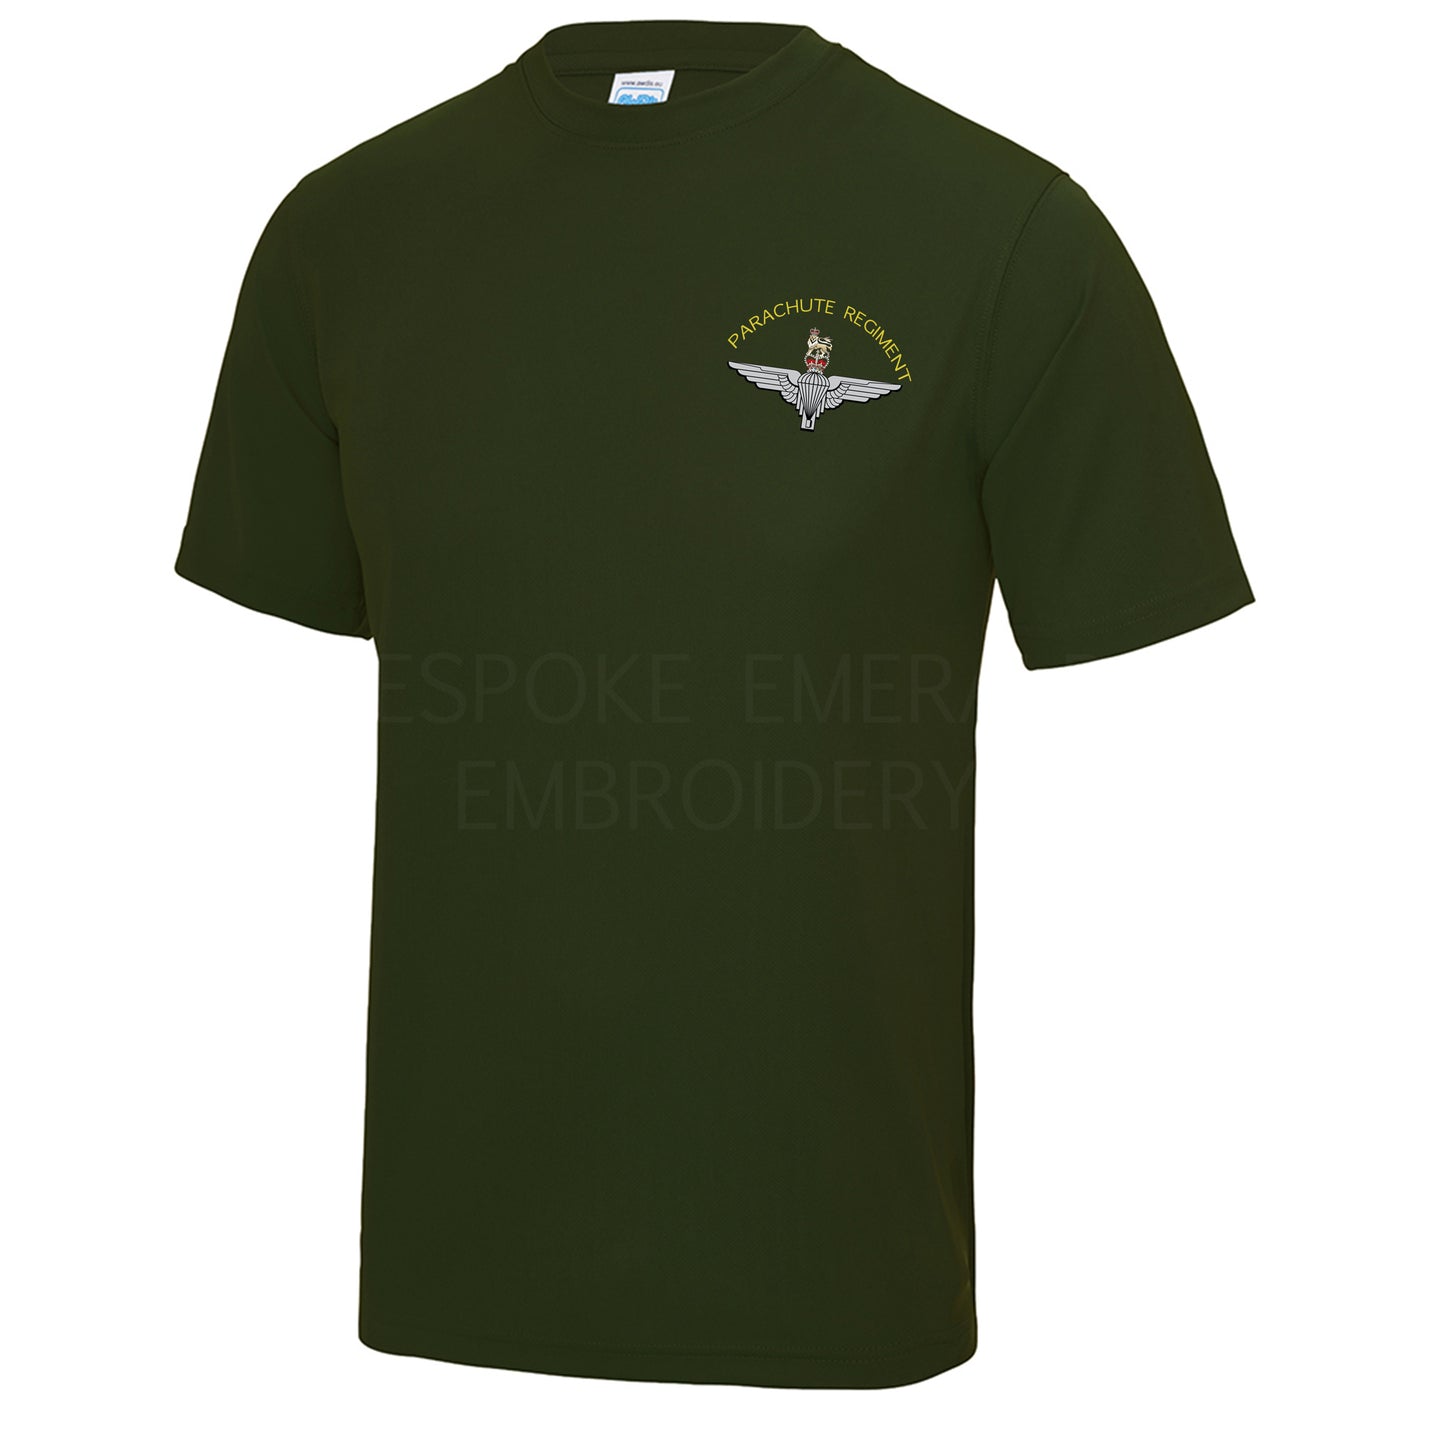 JC001 - Parachute Regiment Cool Wicking T-shirt - Bespoke Emerald Embroidery Ltd